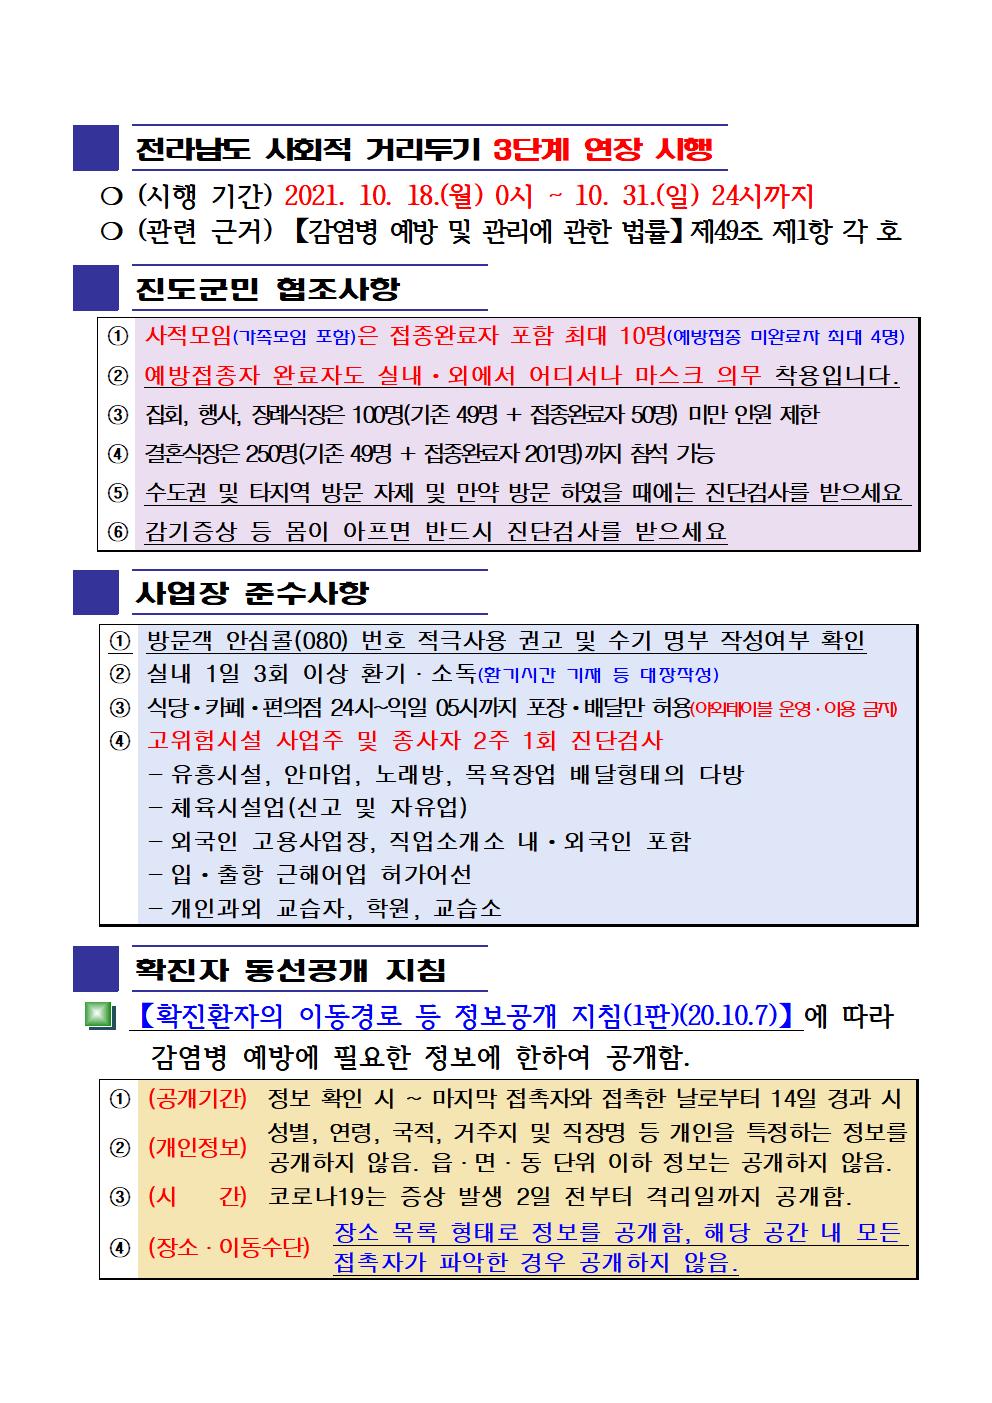 2021년 코로나19 대응 일일상황보고(10월 17일 24시 기준) 첨부#2